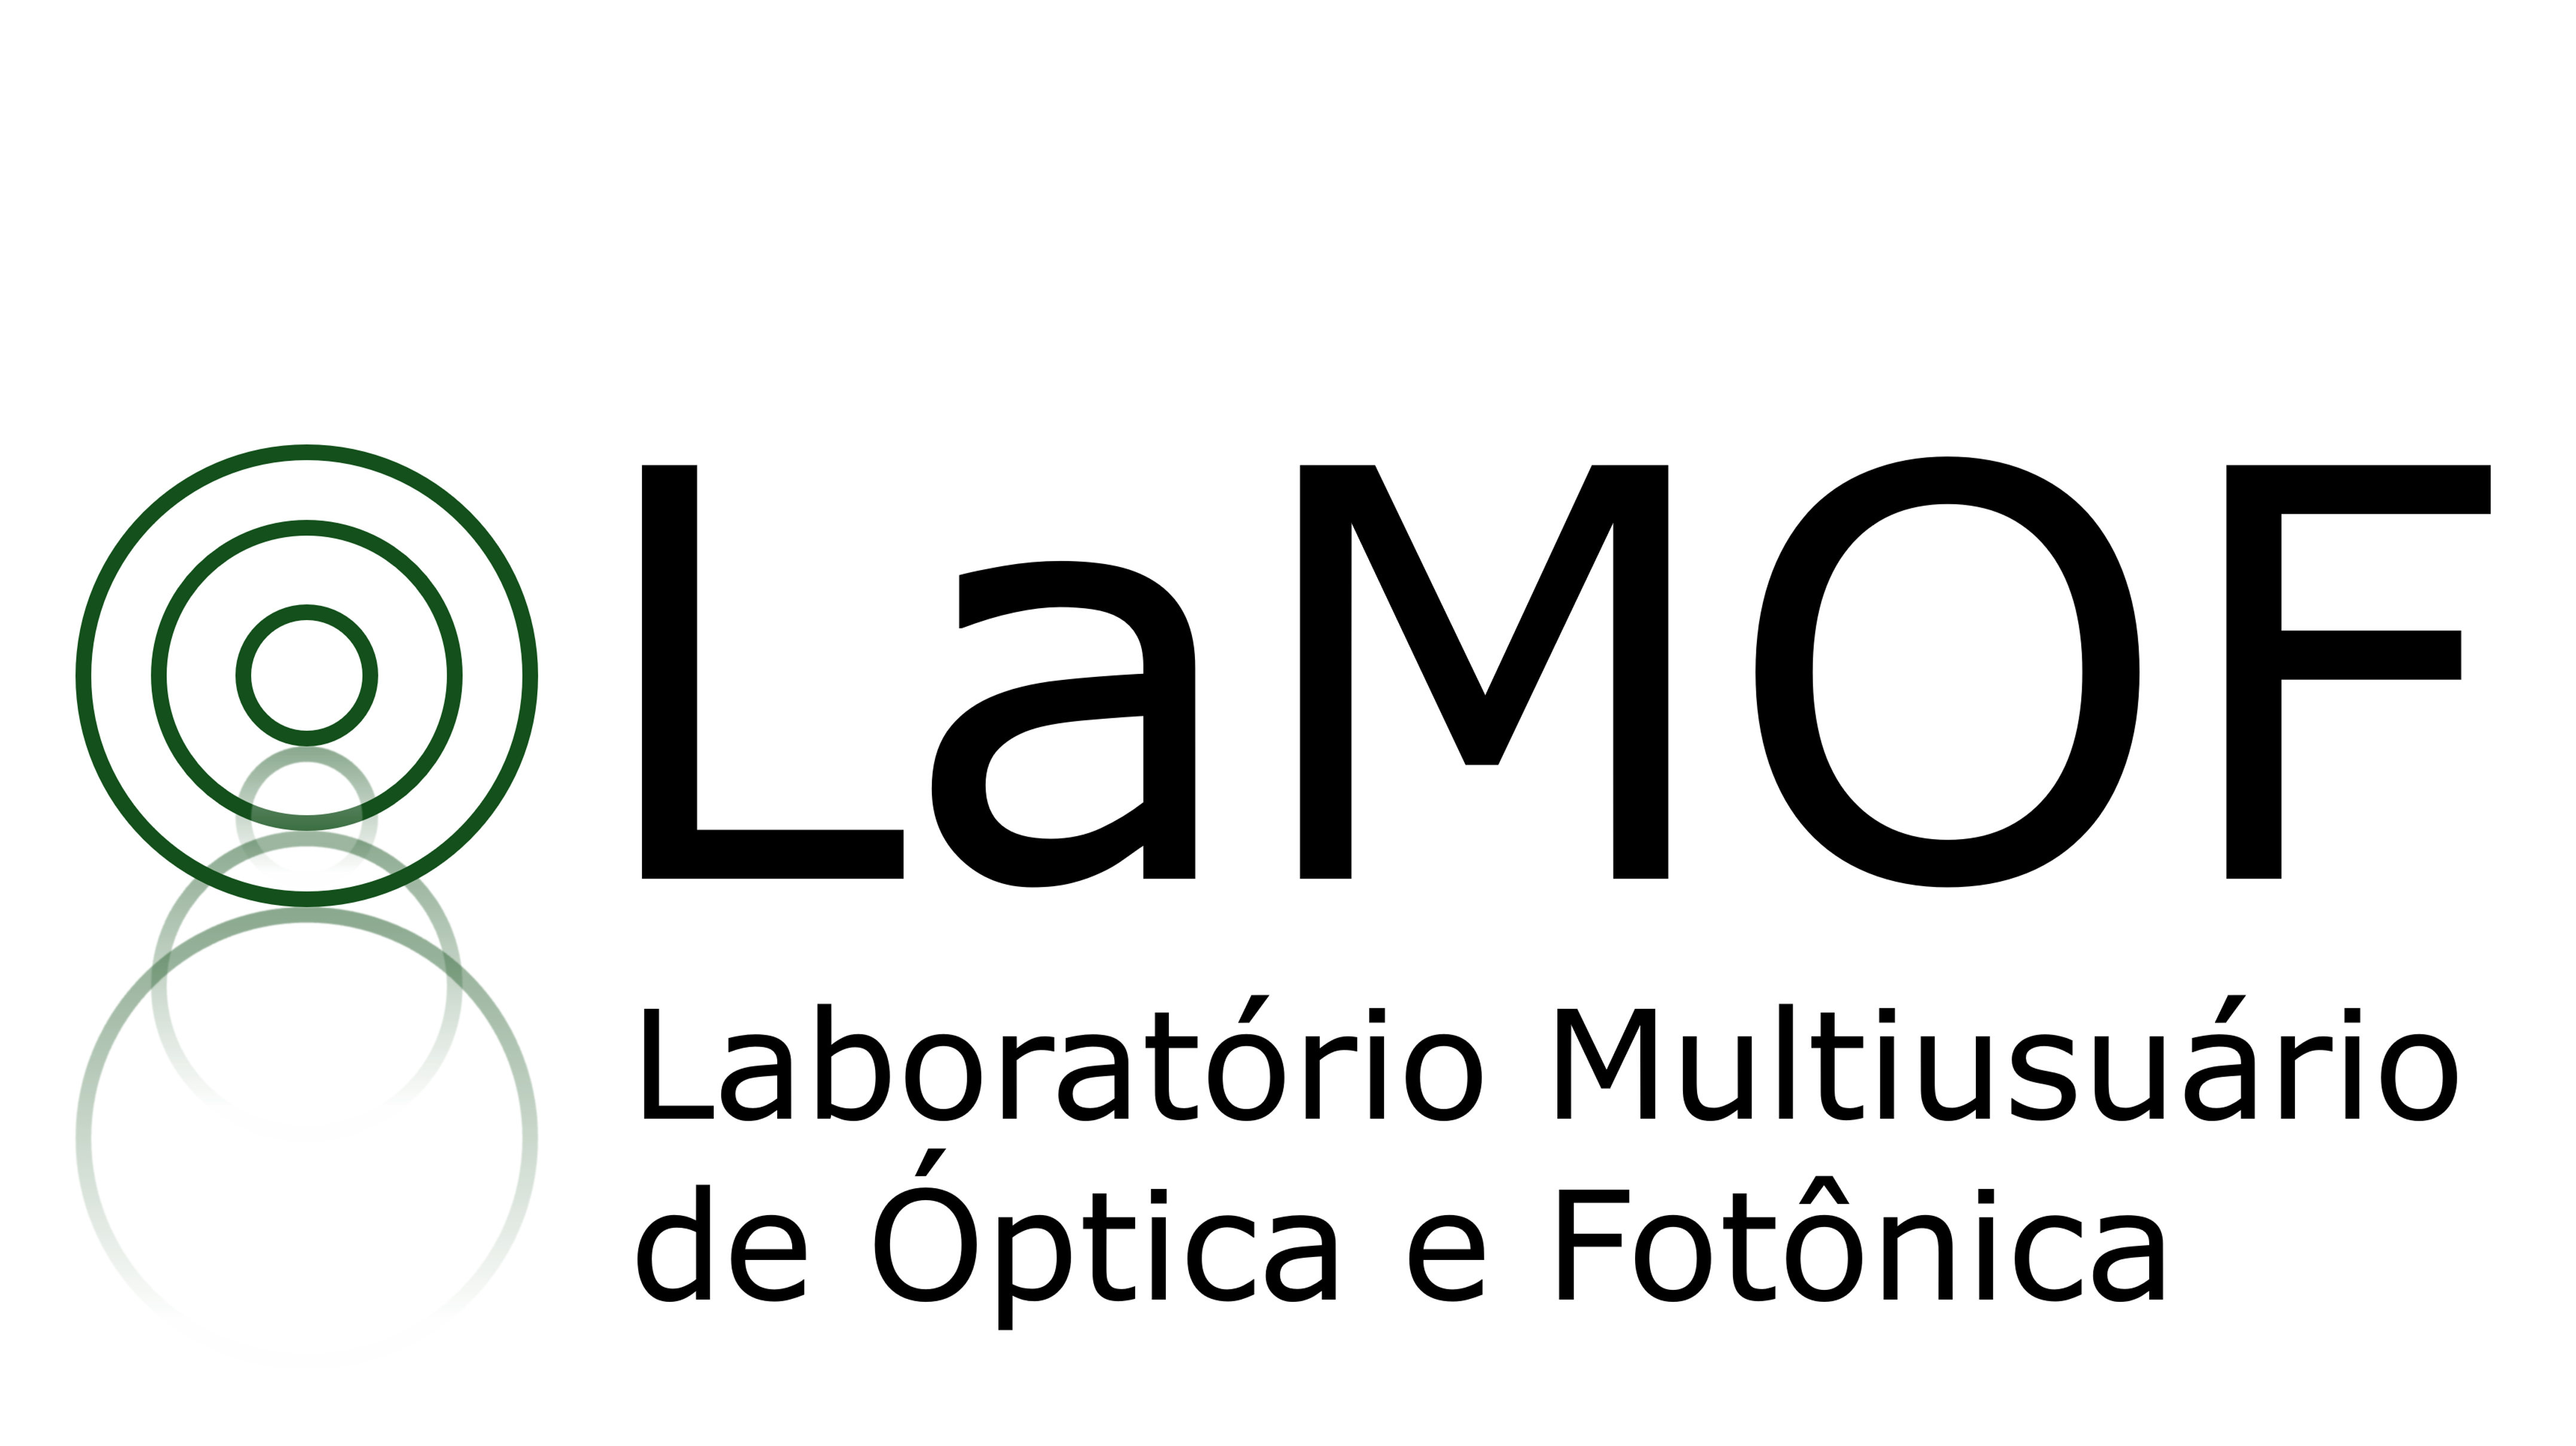 Laboratório Multiusuário de Óptica e Fotônica - LaMOF